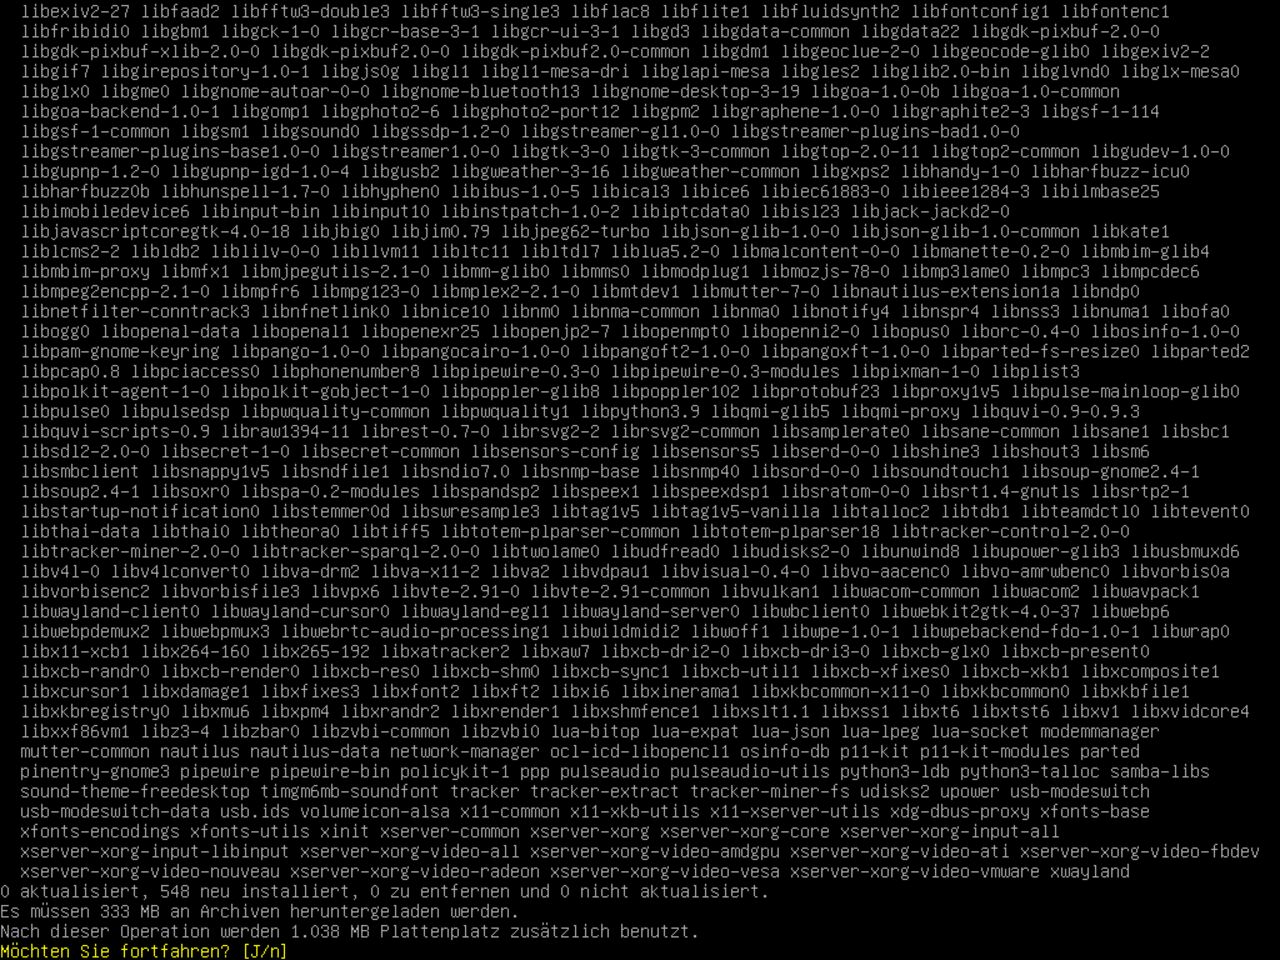 Mein erster Linux-Laptop - Bestätigen Sie die Liste der ausgewählten Pakete, um einen minimalen Gnome auf dem Debian zu installieren